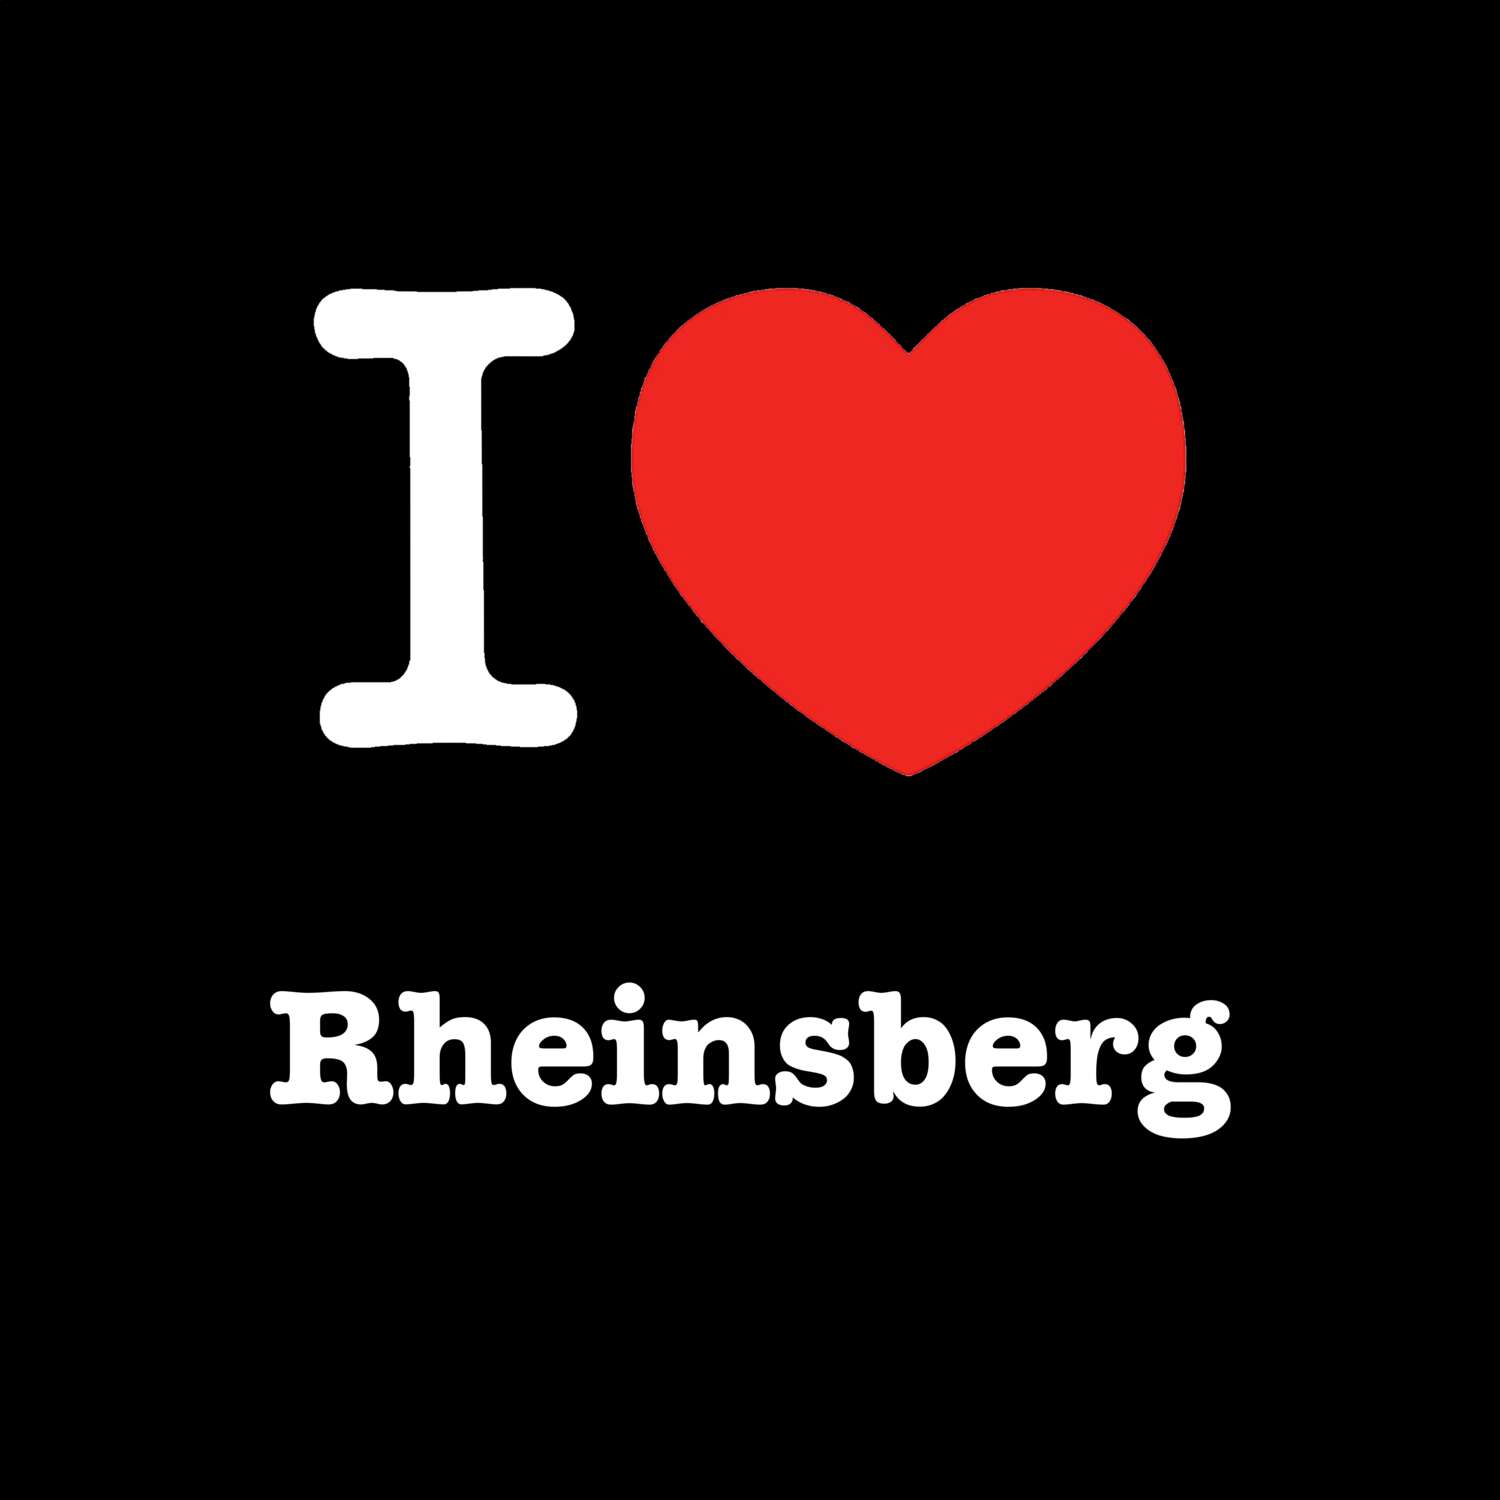 Rheinsberg T-Shirt »I love«